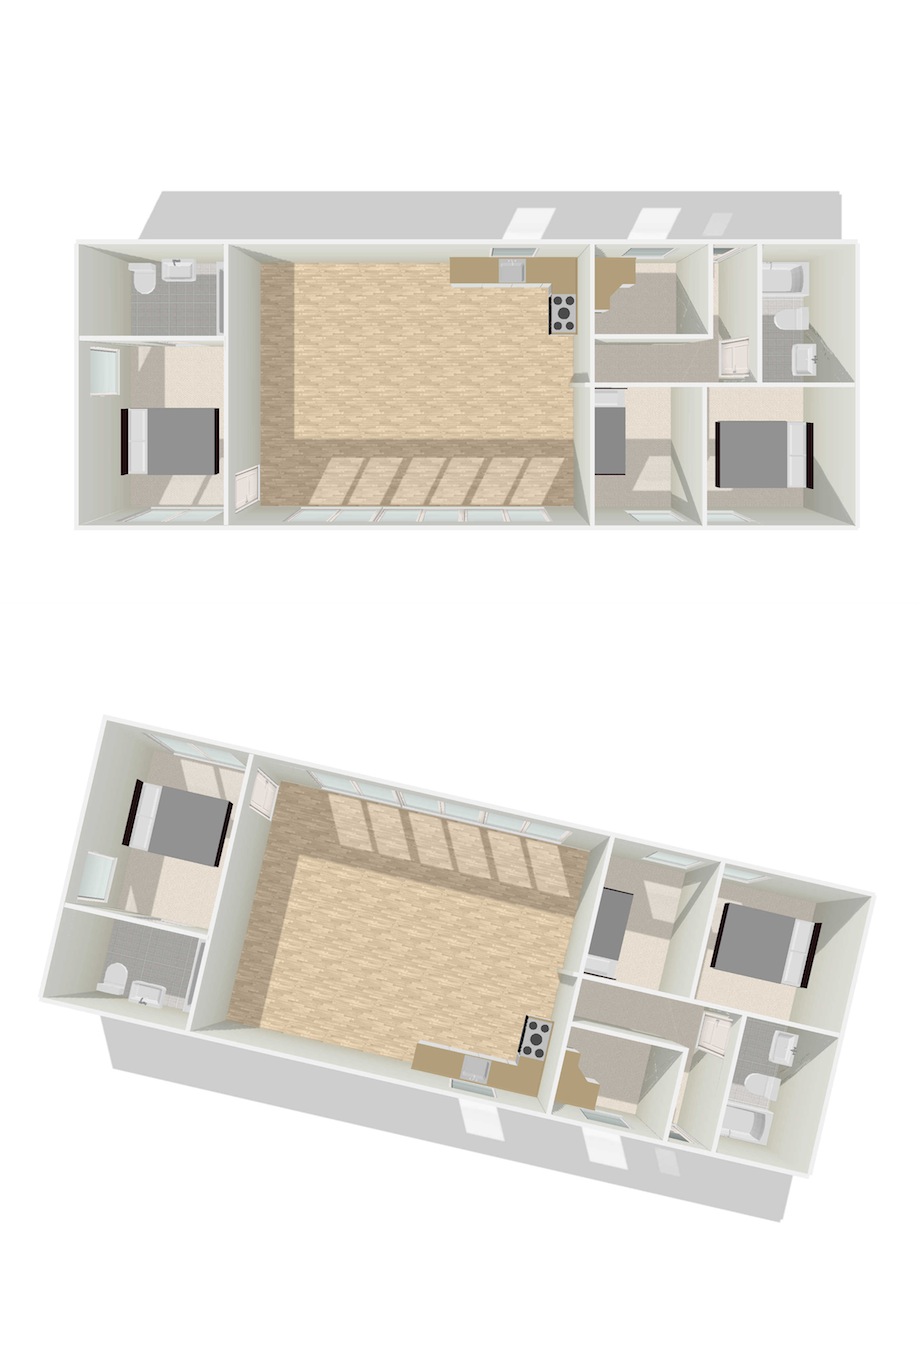 Mobile-Home-Floor-Plans-3d-p6